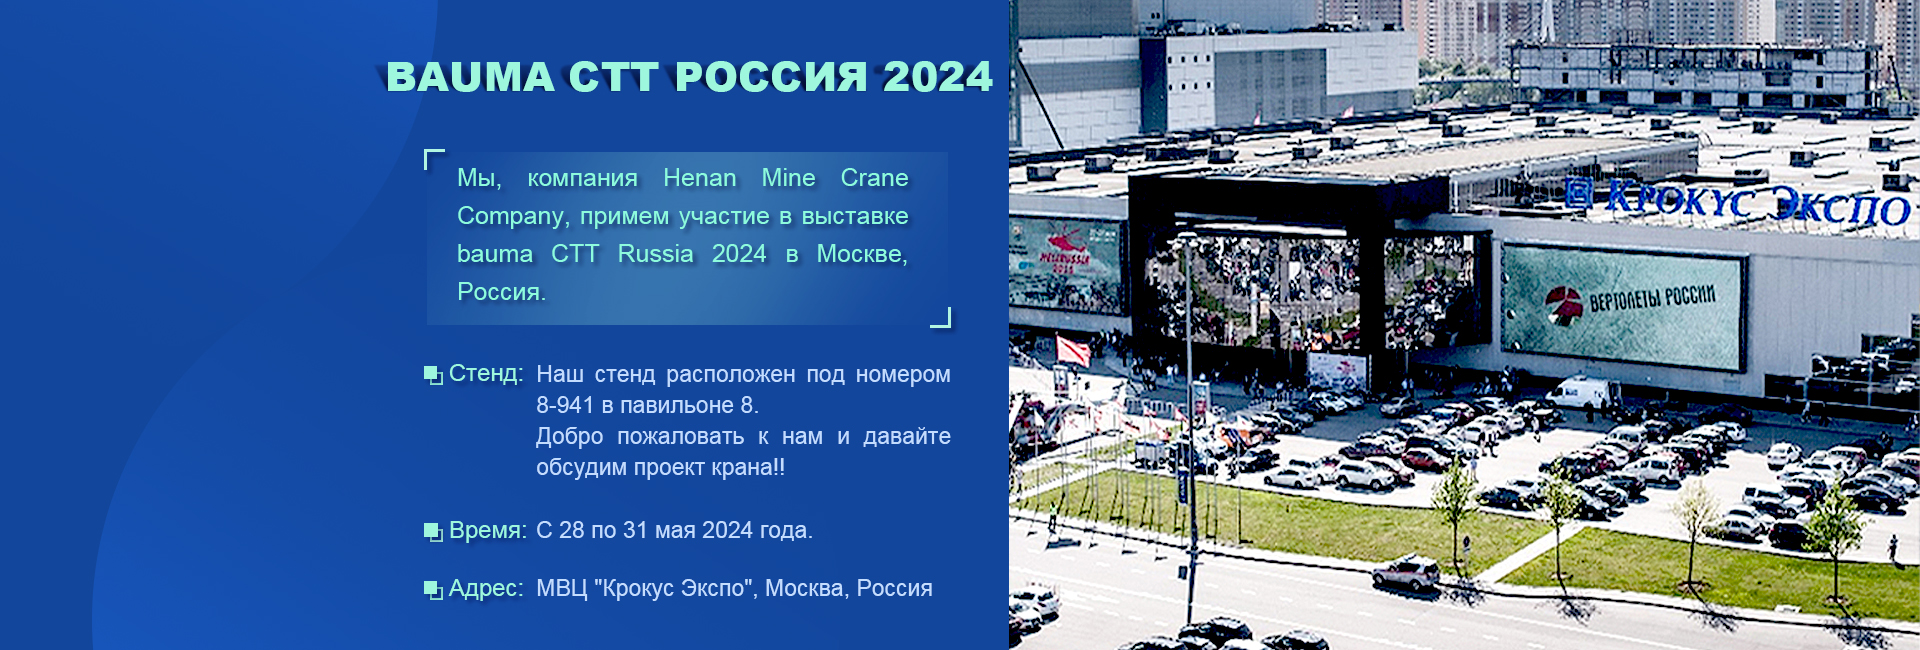 компания Henan Mine Crane Company, примем участие в выставке bauma CTT Russia 2024 в Москве, Россия.